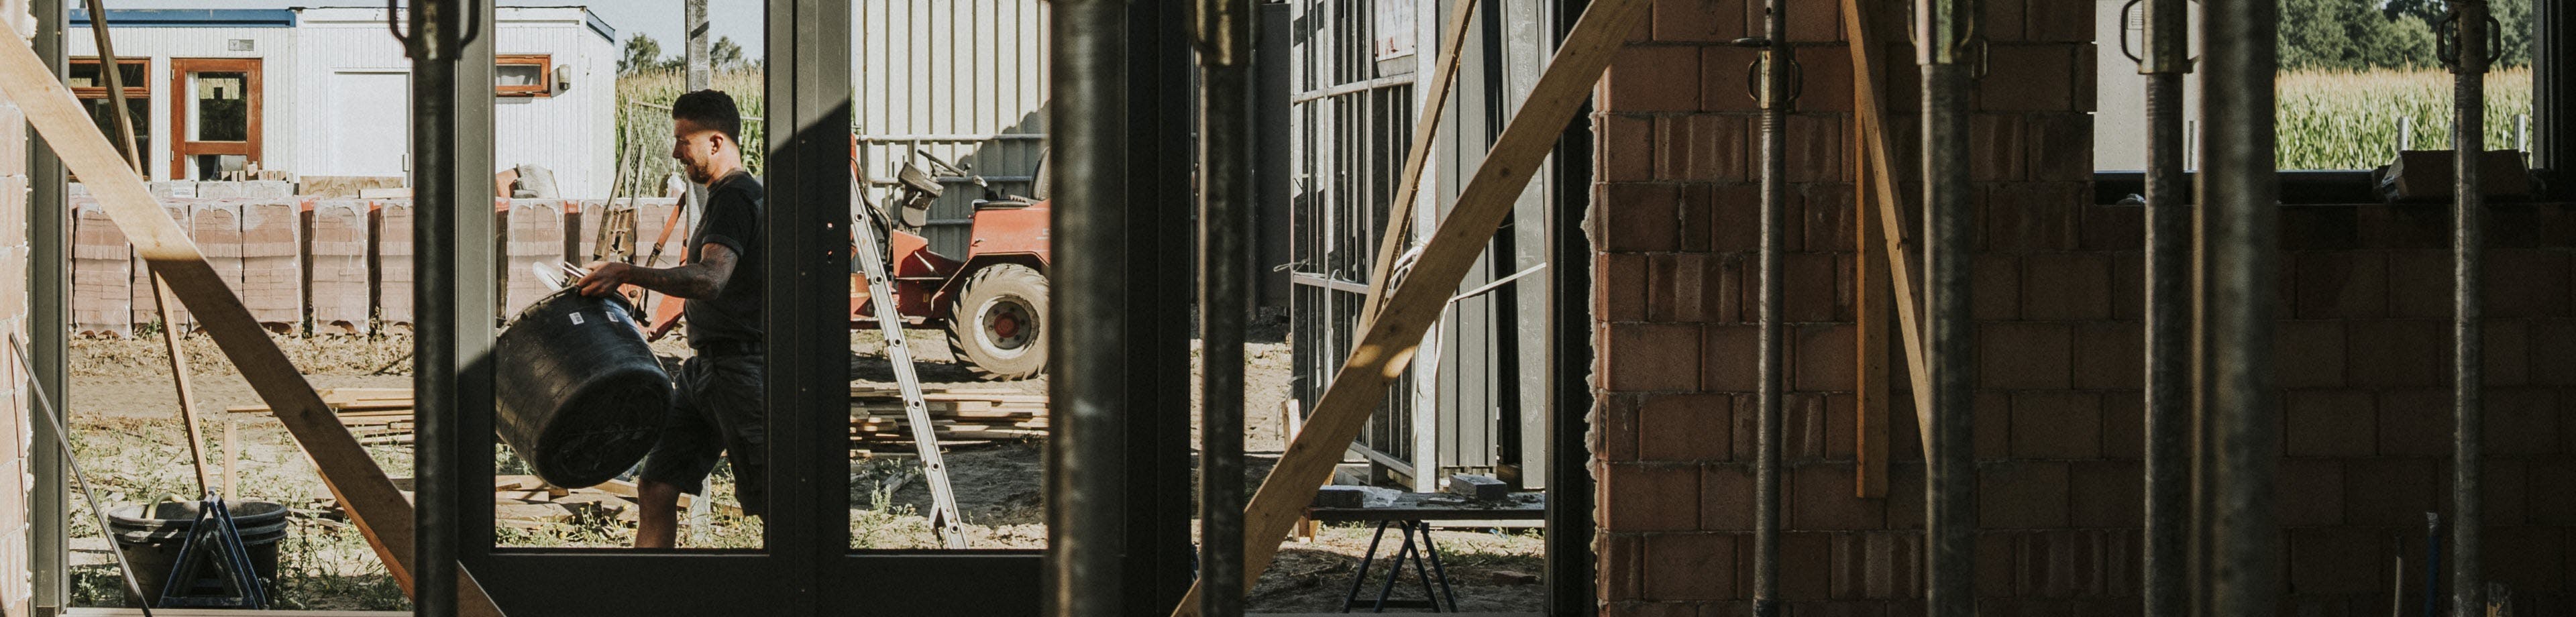 Een man in werkkleding loopt met een speciekuip over een bouwplaats. De foto is gemaakt van binnenuit een pand in aanbouw.